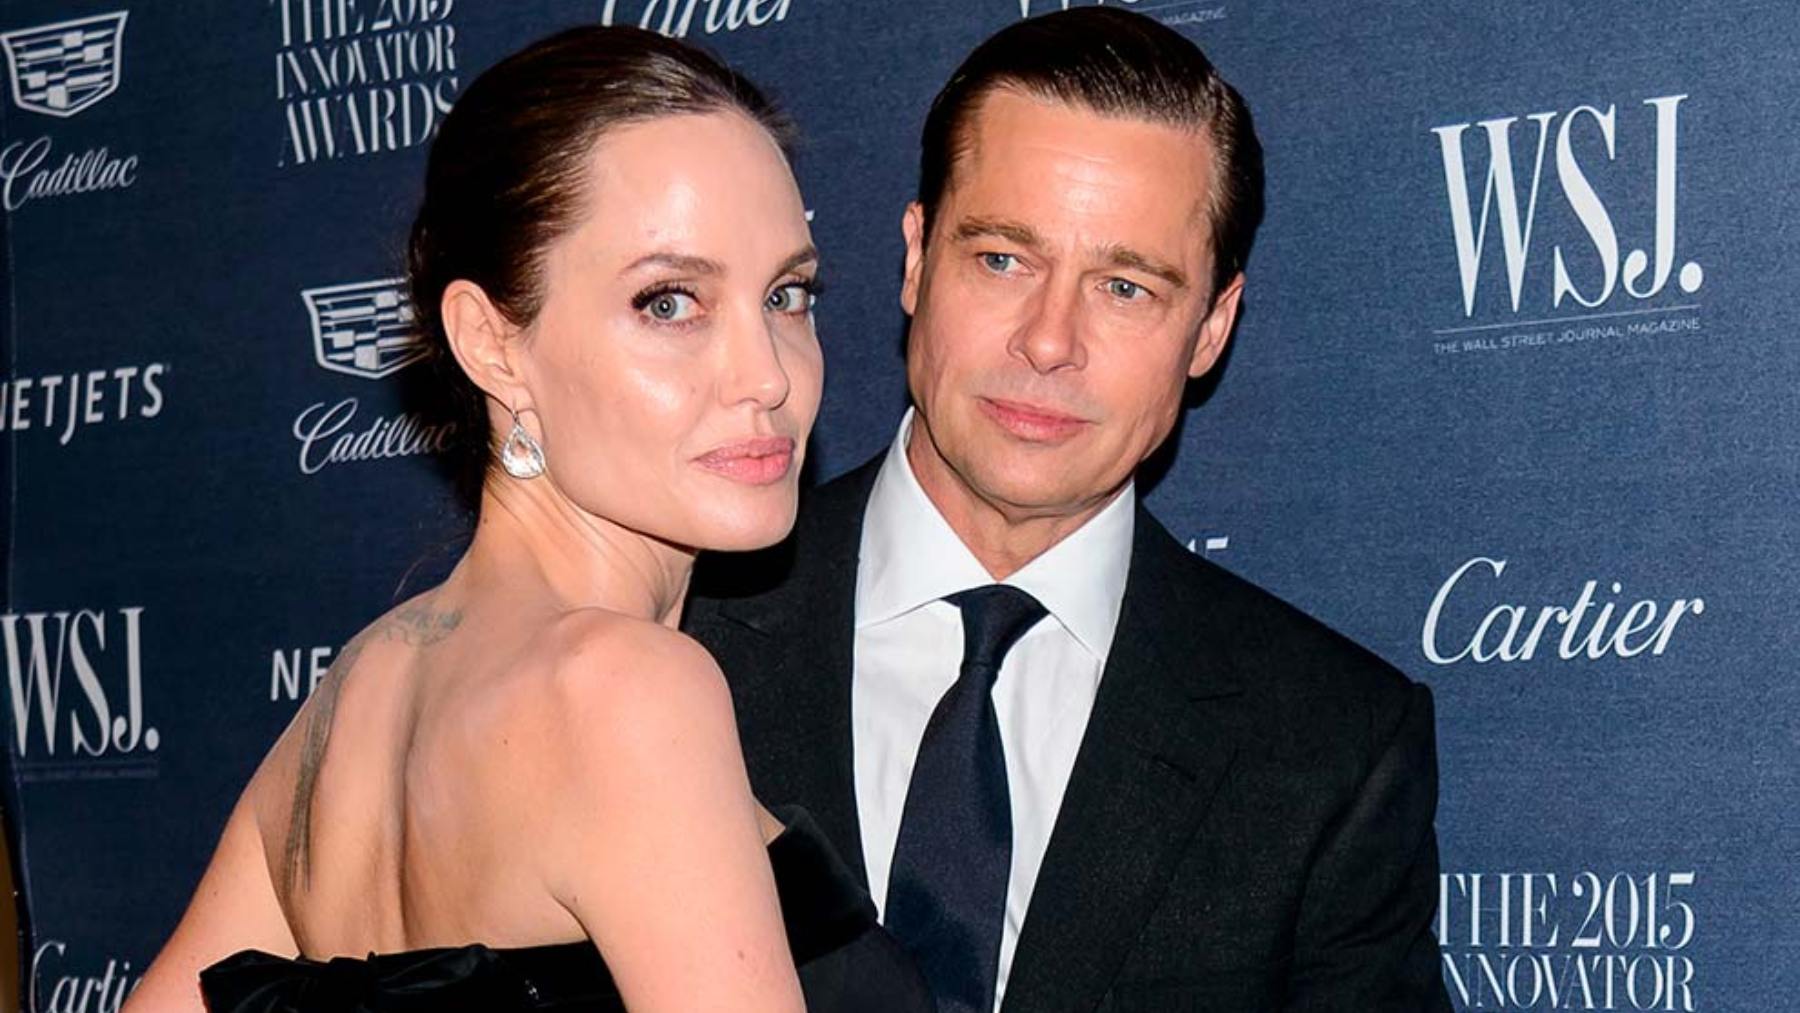 Sale a luz el motivo del divorcio de Brad Pitt y Angelina Jolie tras ser investigado el actor por el FBI